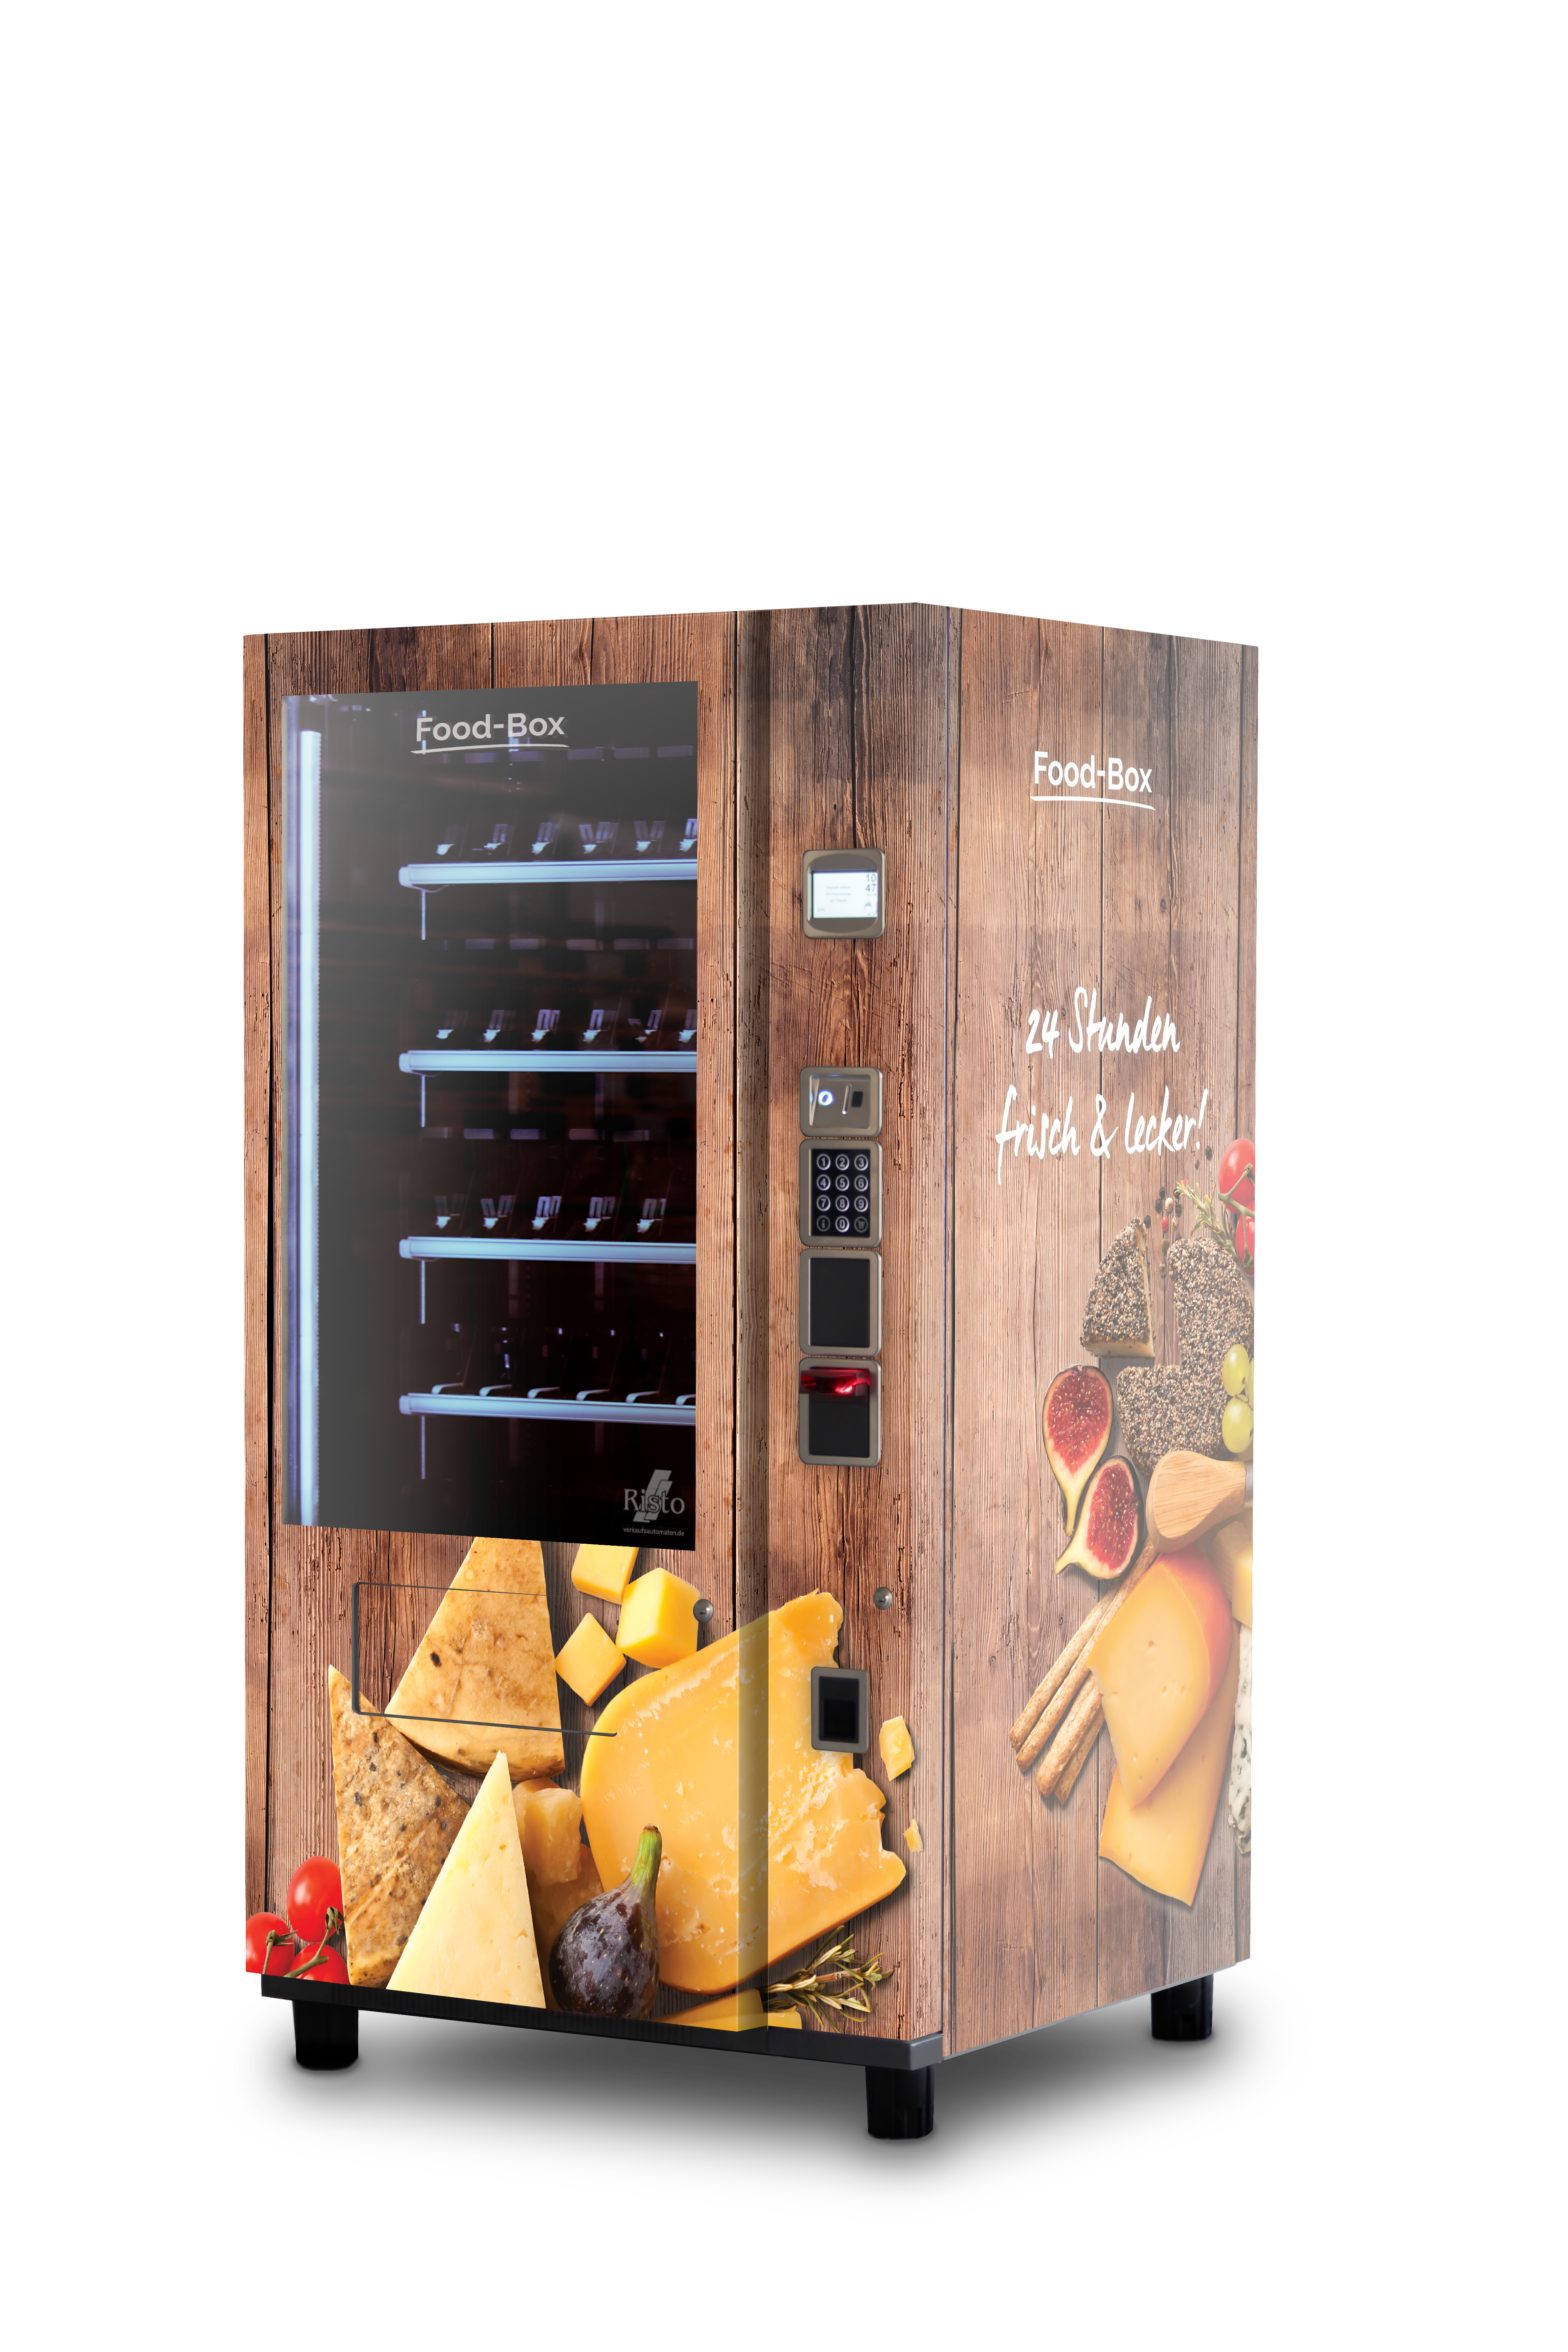 Automat für Lebensmittel